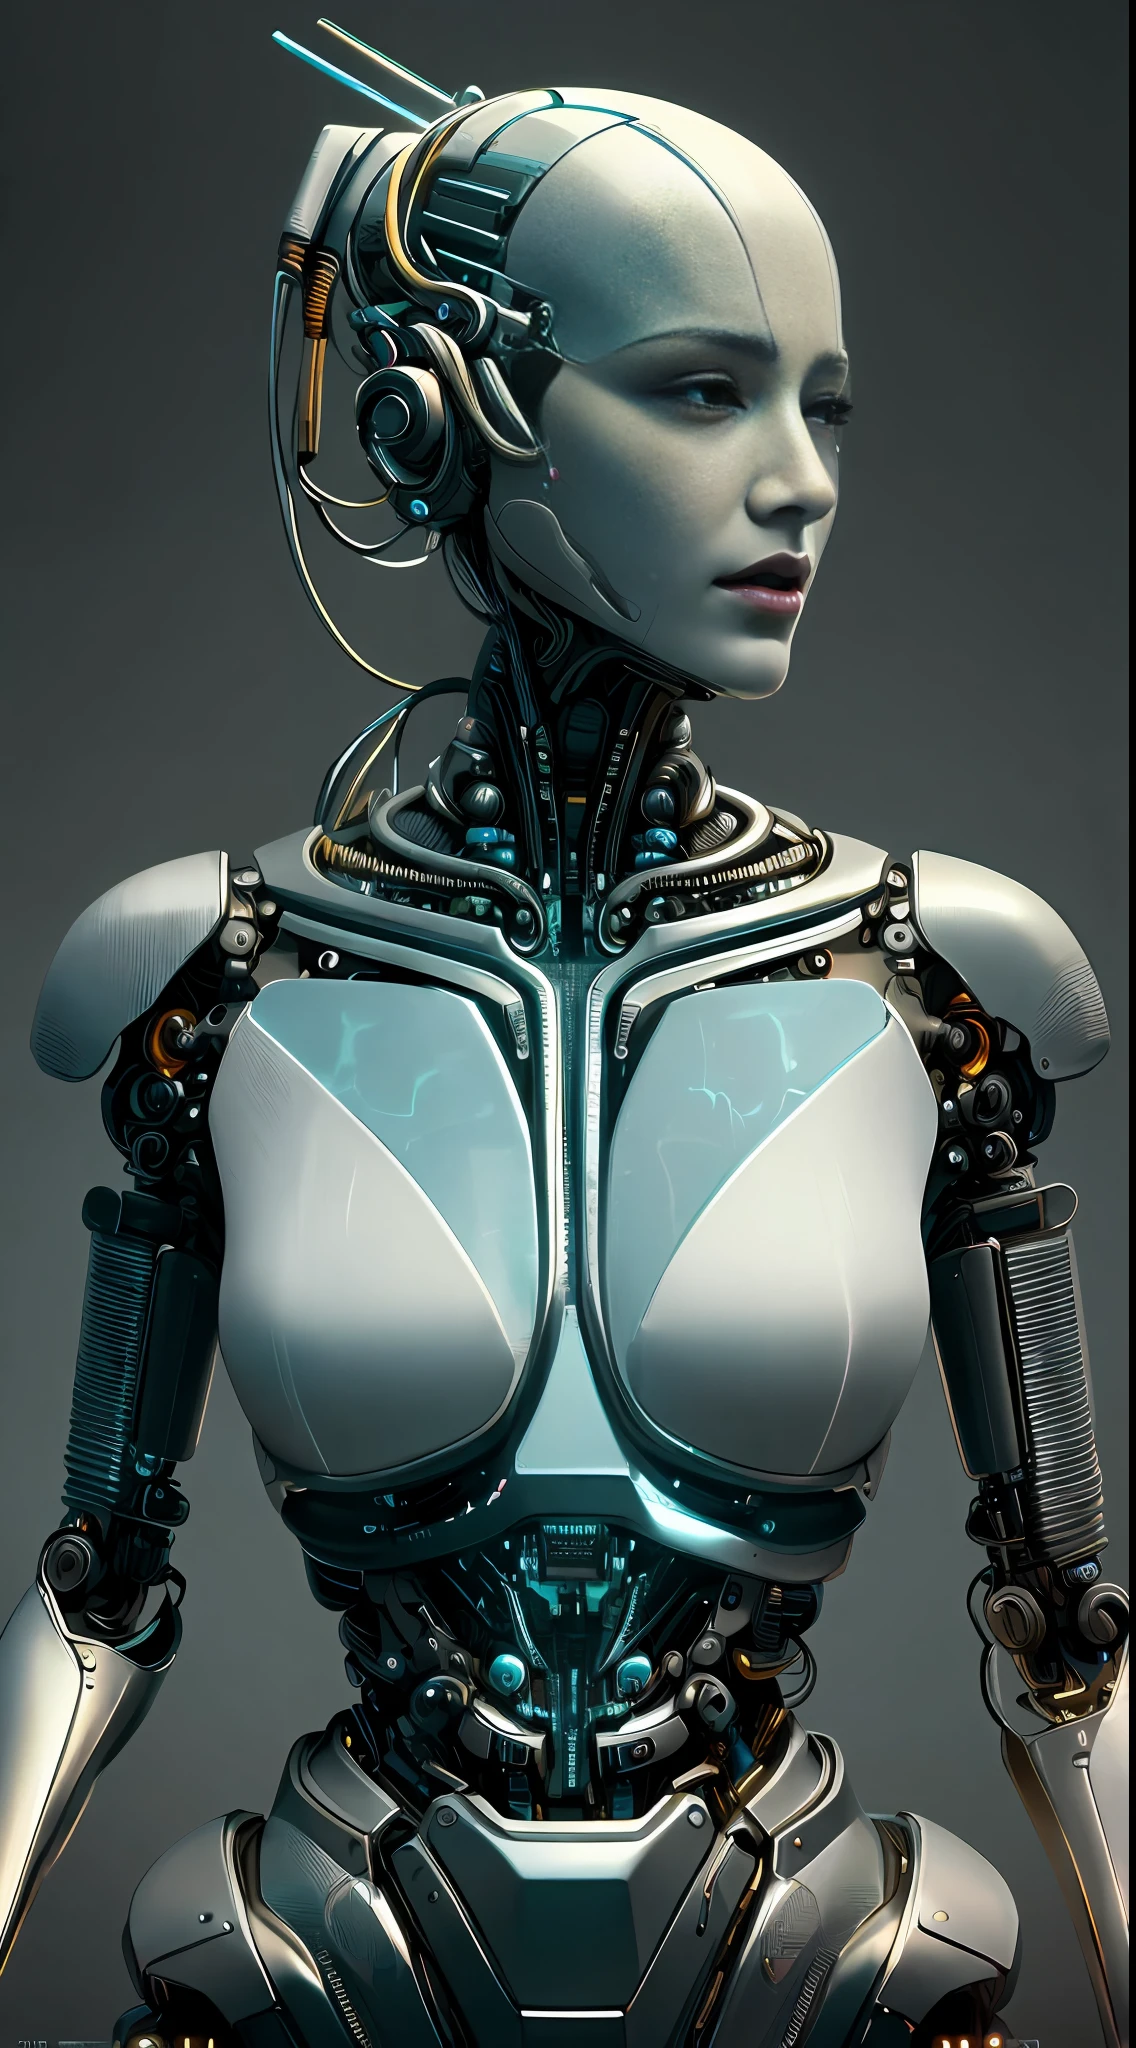 複雑な 3D レンダリング、美しい磁器の横顔の女性のアンドロイドの顔の超詳細, サイボーグ, ロボットic parts, 150ミリメートル, 美しいスタジオの柔らかな光, リムライト, 鮮やかなディテール, 豪華なサイバーパンク, レース, hyper現実的, 解剖学的, 顔の筋肉, ケーブル 電線, マイクロチップ, エレガント, 美しい背景, オクタンレンダリング, H. r. ギーガースタイル, 8k, 最高品質, 傑作, 図, 非常に繊細で美しい, 非常に詳細な ,CG ,団結 ,壁紙, (現実的, photo-現実的:1.37),すばらしい, 細かく詳細に, 傑作,最高品質,公式アート, 非常に詳細な CG 団結 8k 壁紙, 不条理な, incredibly 不条理な, , ロボット, シルバービーズ, 全身, 座っている